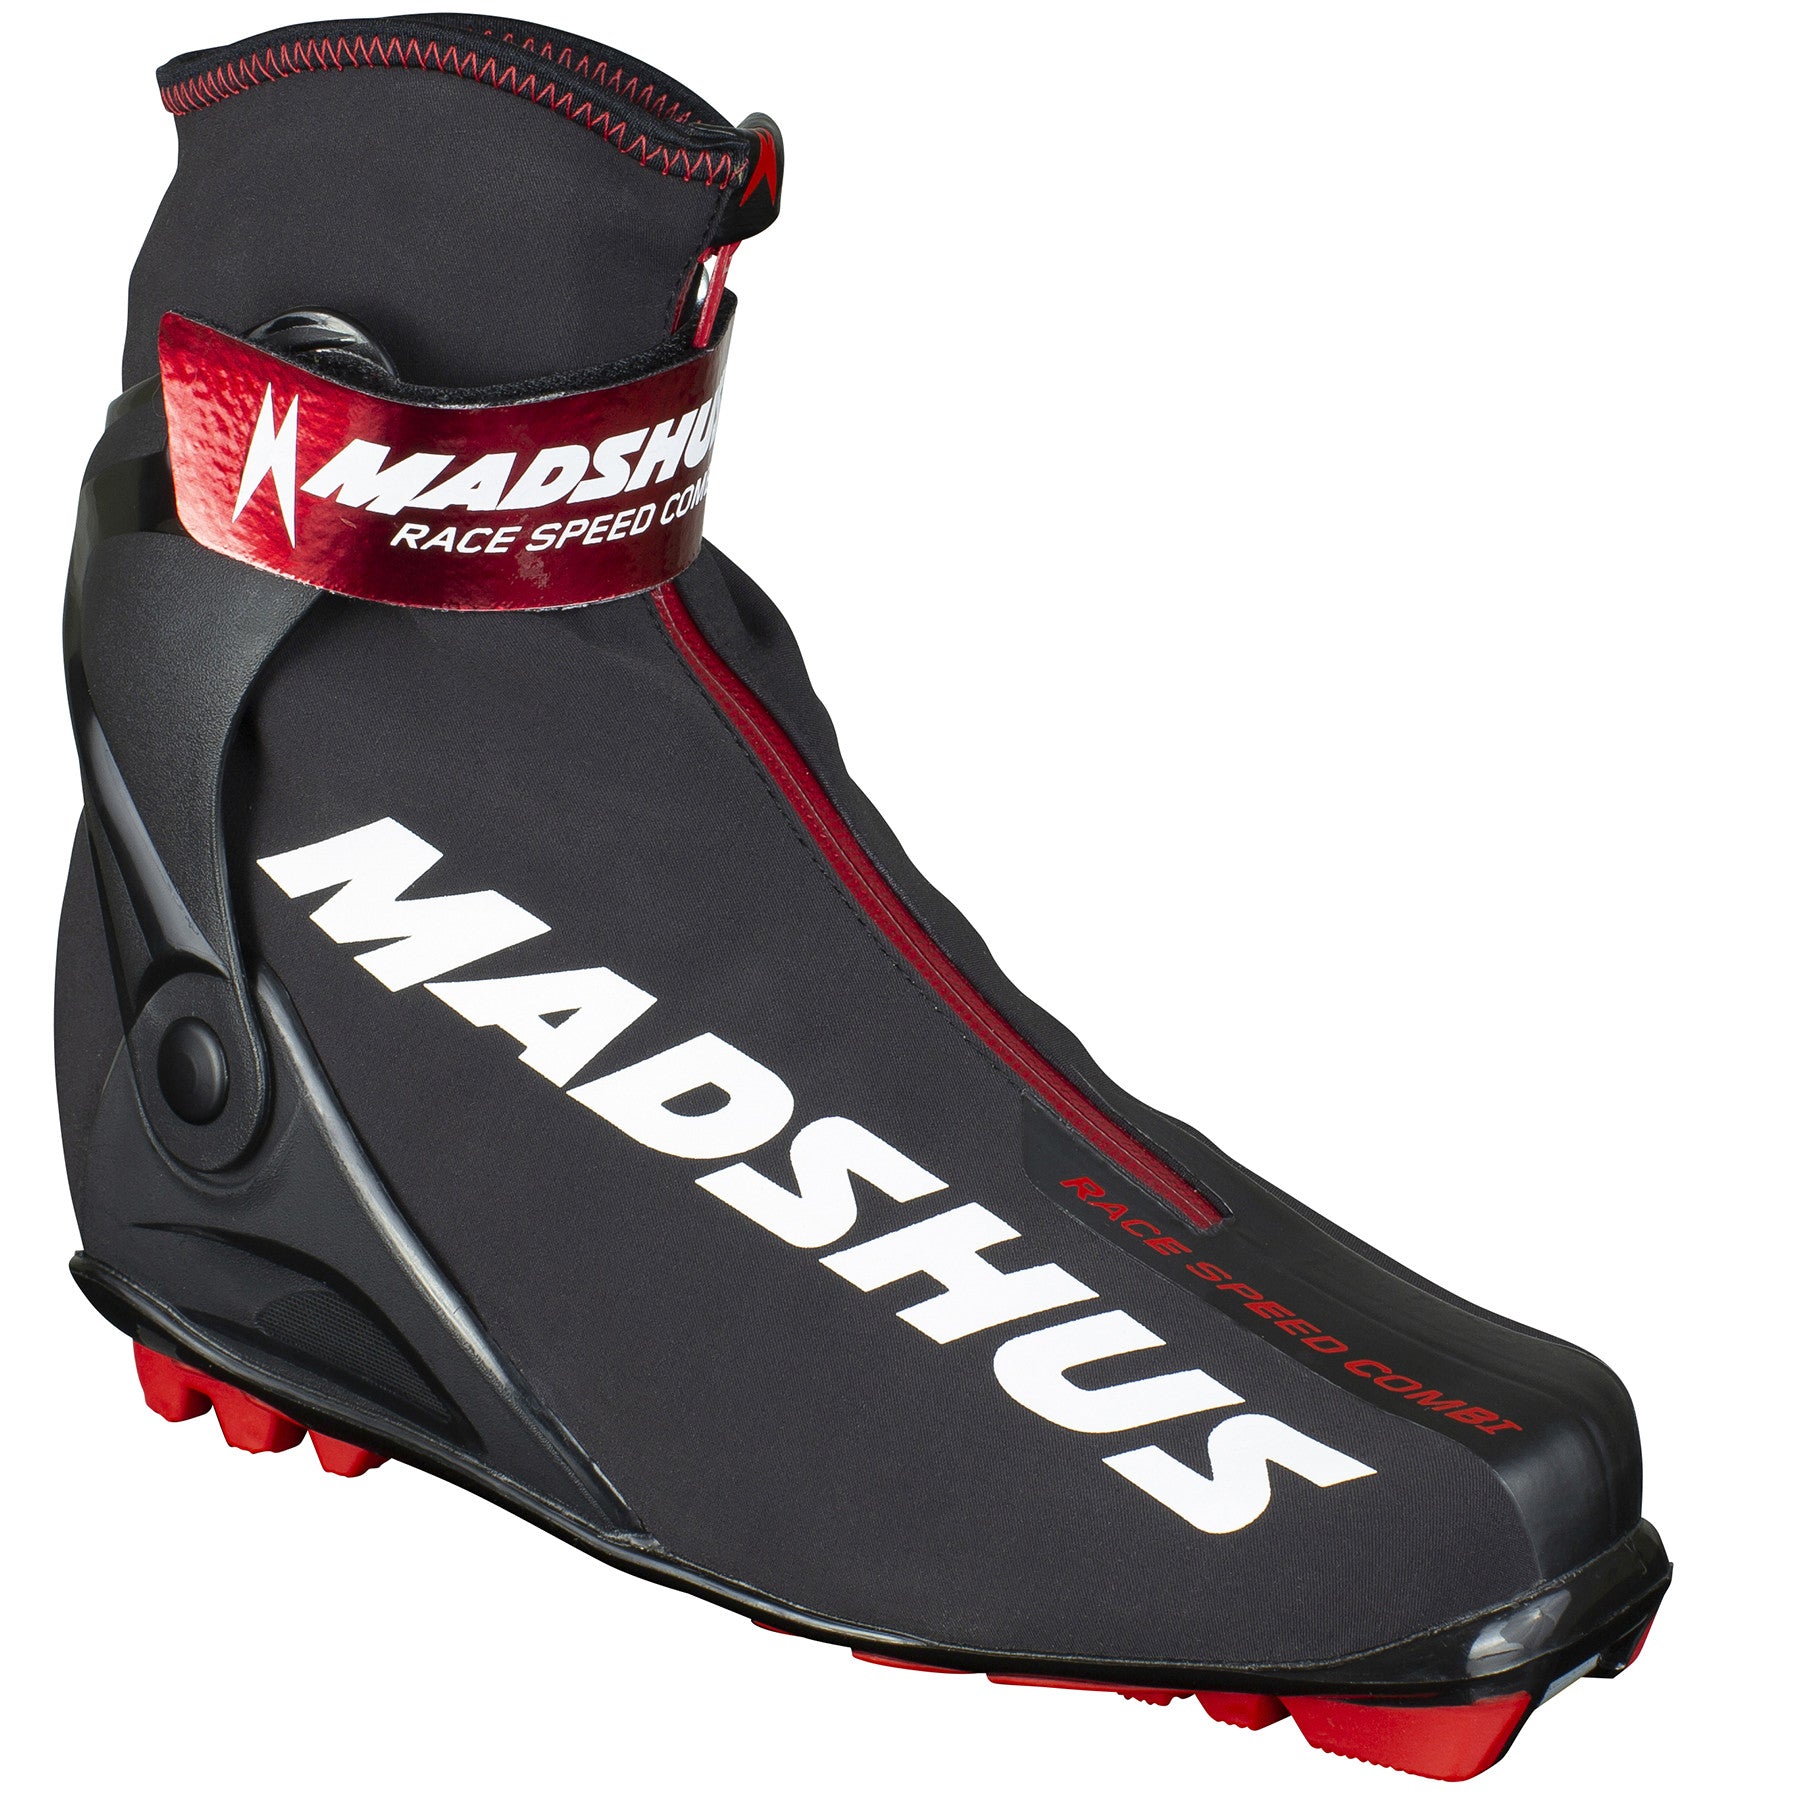 Madshus Race Speed Combi Boot